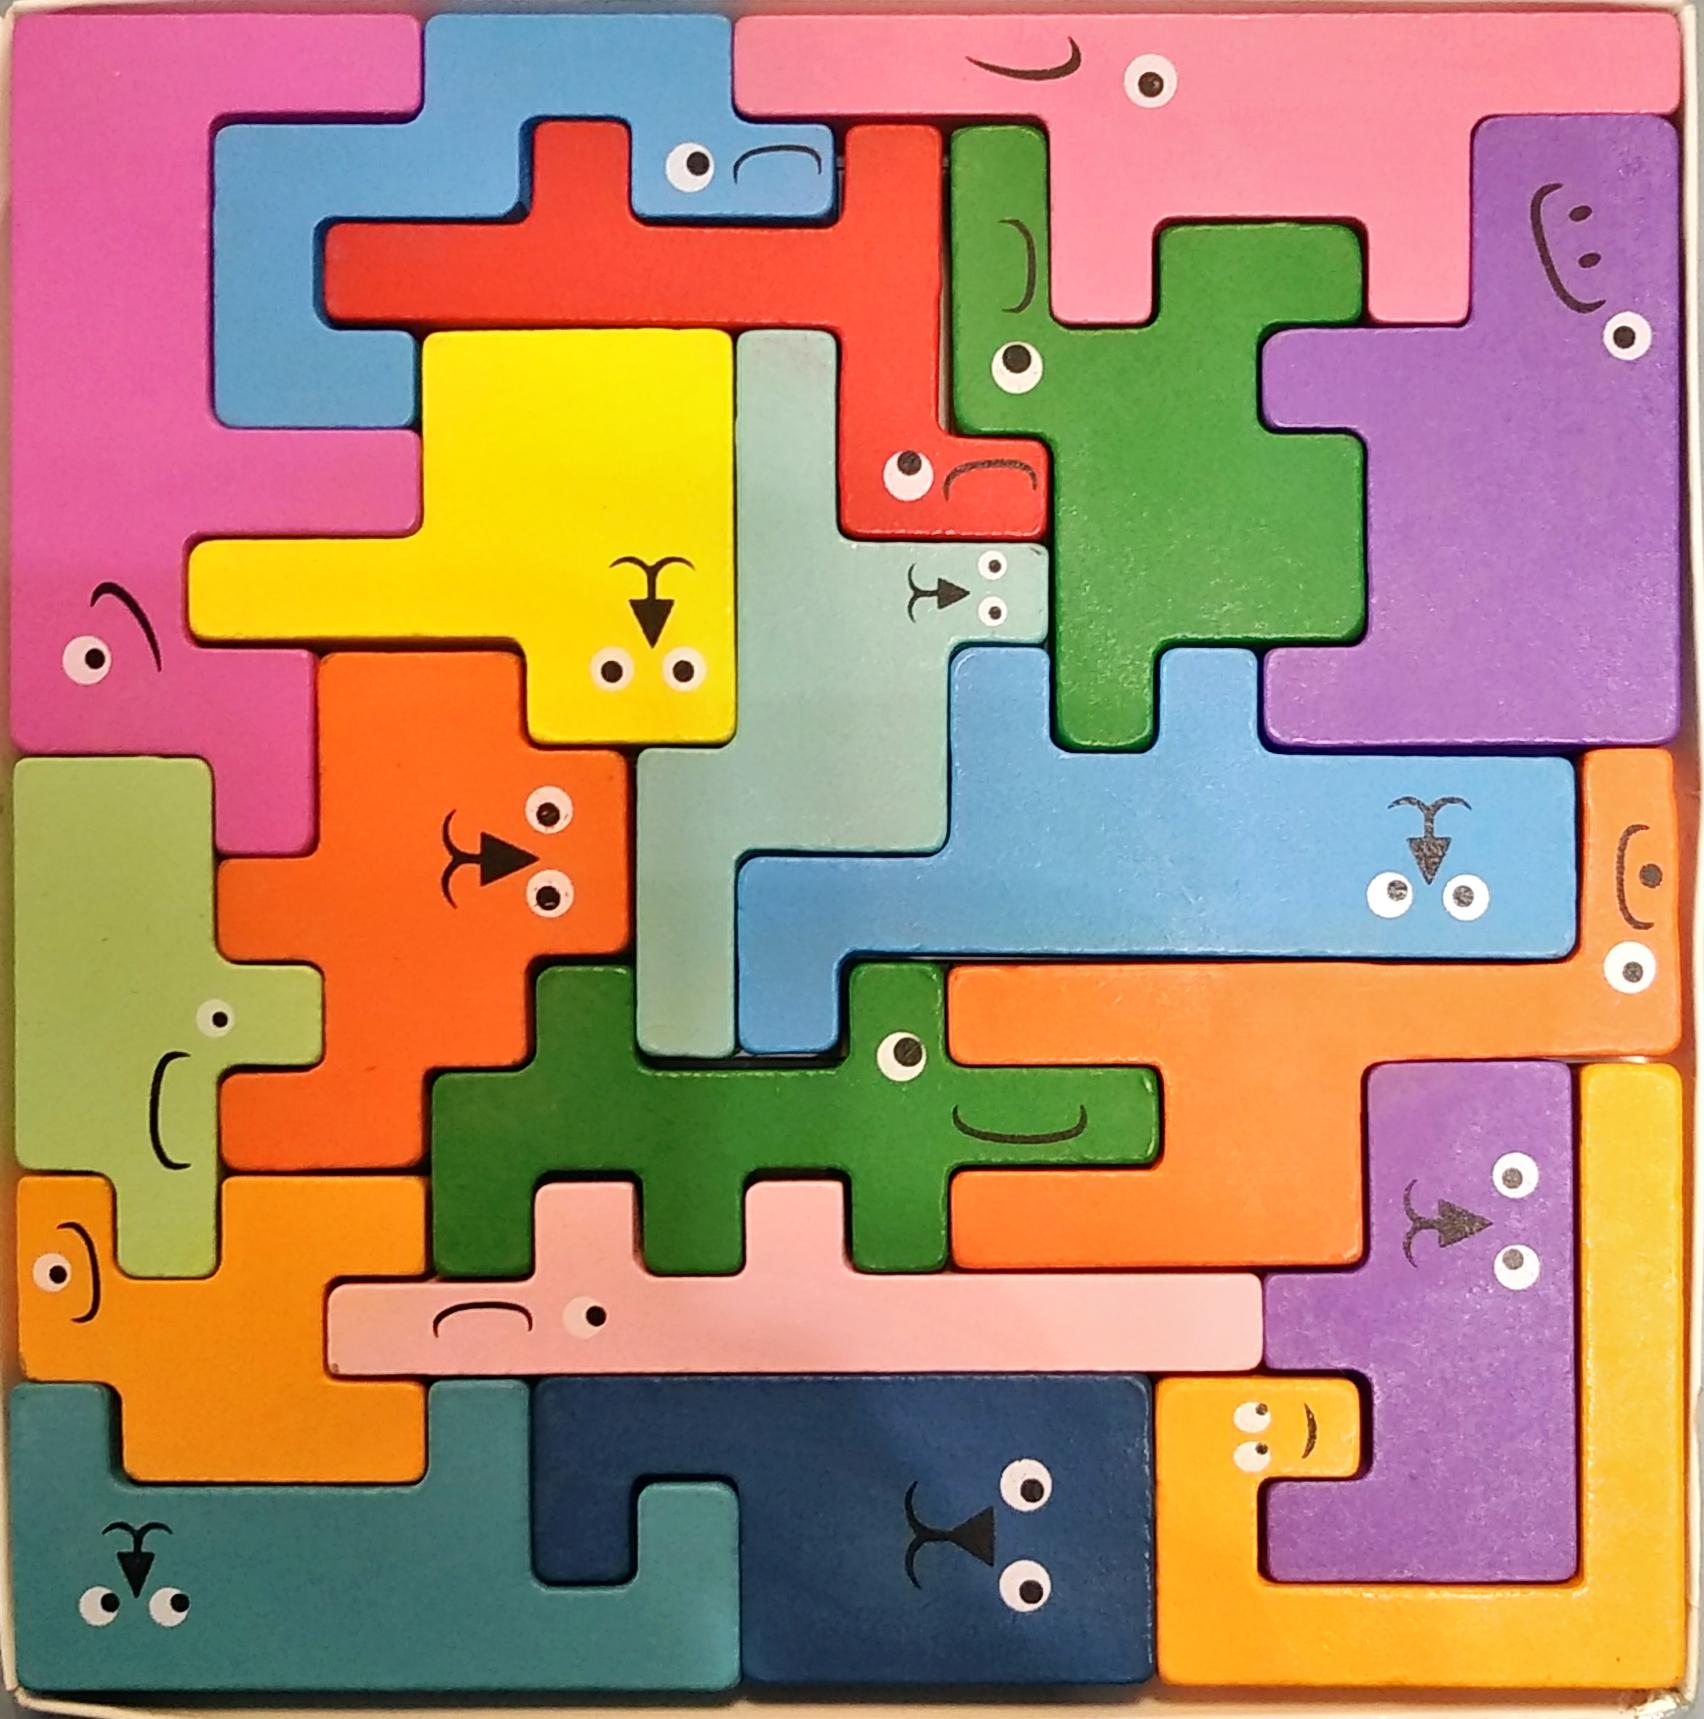 PUZZLE FORMES ET LOGIQUE<br>Référence ludothèque : 4456<br>1 à  joueur(s) <br>Vous devez disposer 19 pièces de de puzzle afin que le plateau carré soit entièrement rempli. Des formes tracés sur le plateau vont aider les enfants plus jeunes.